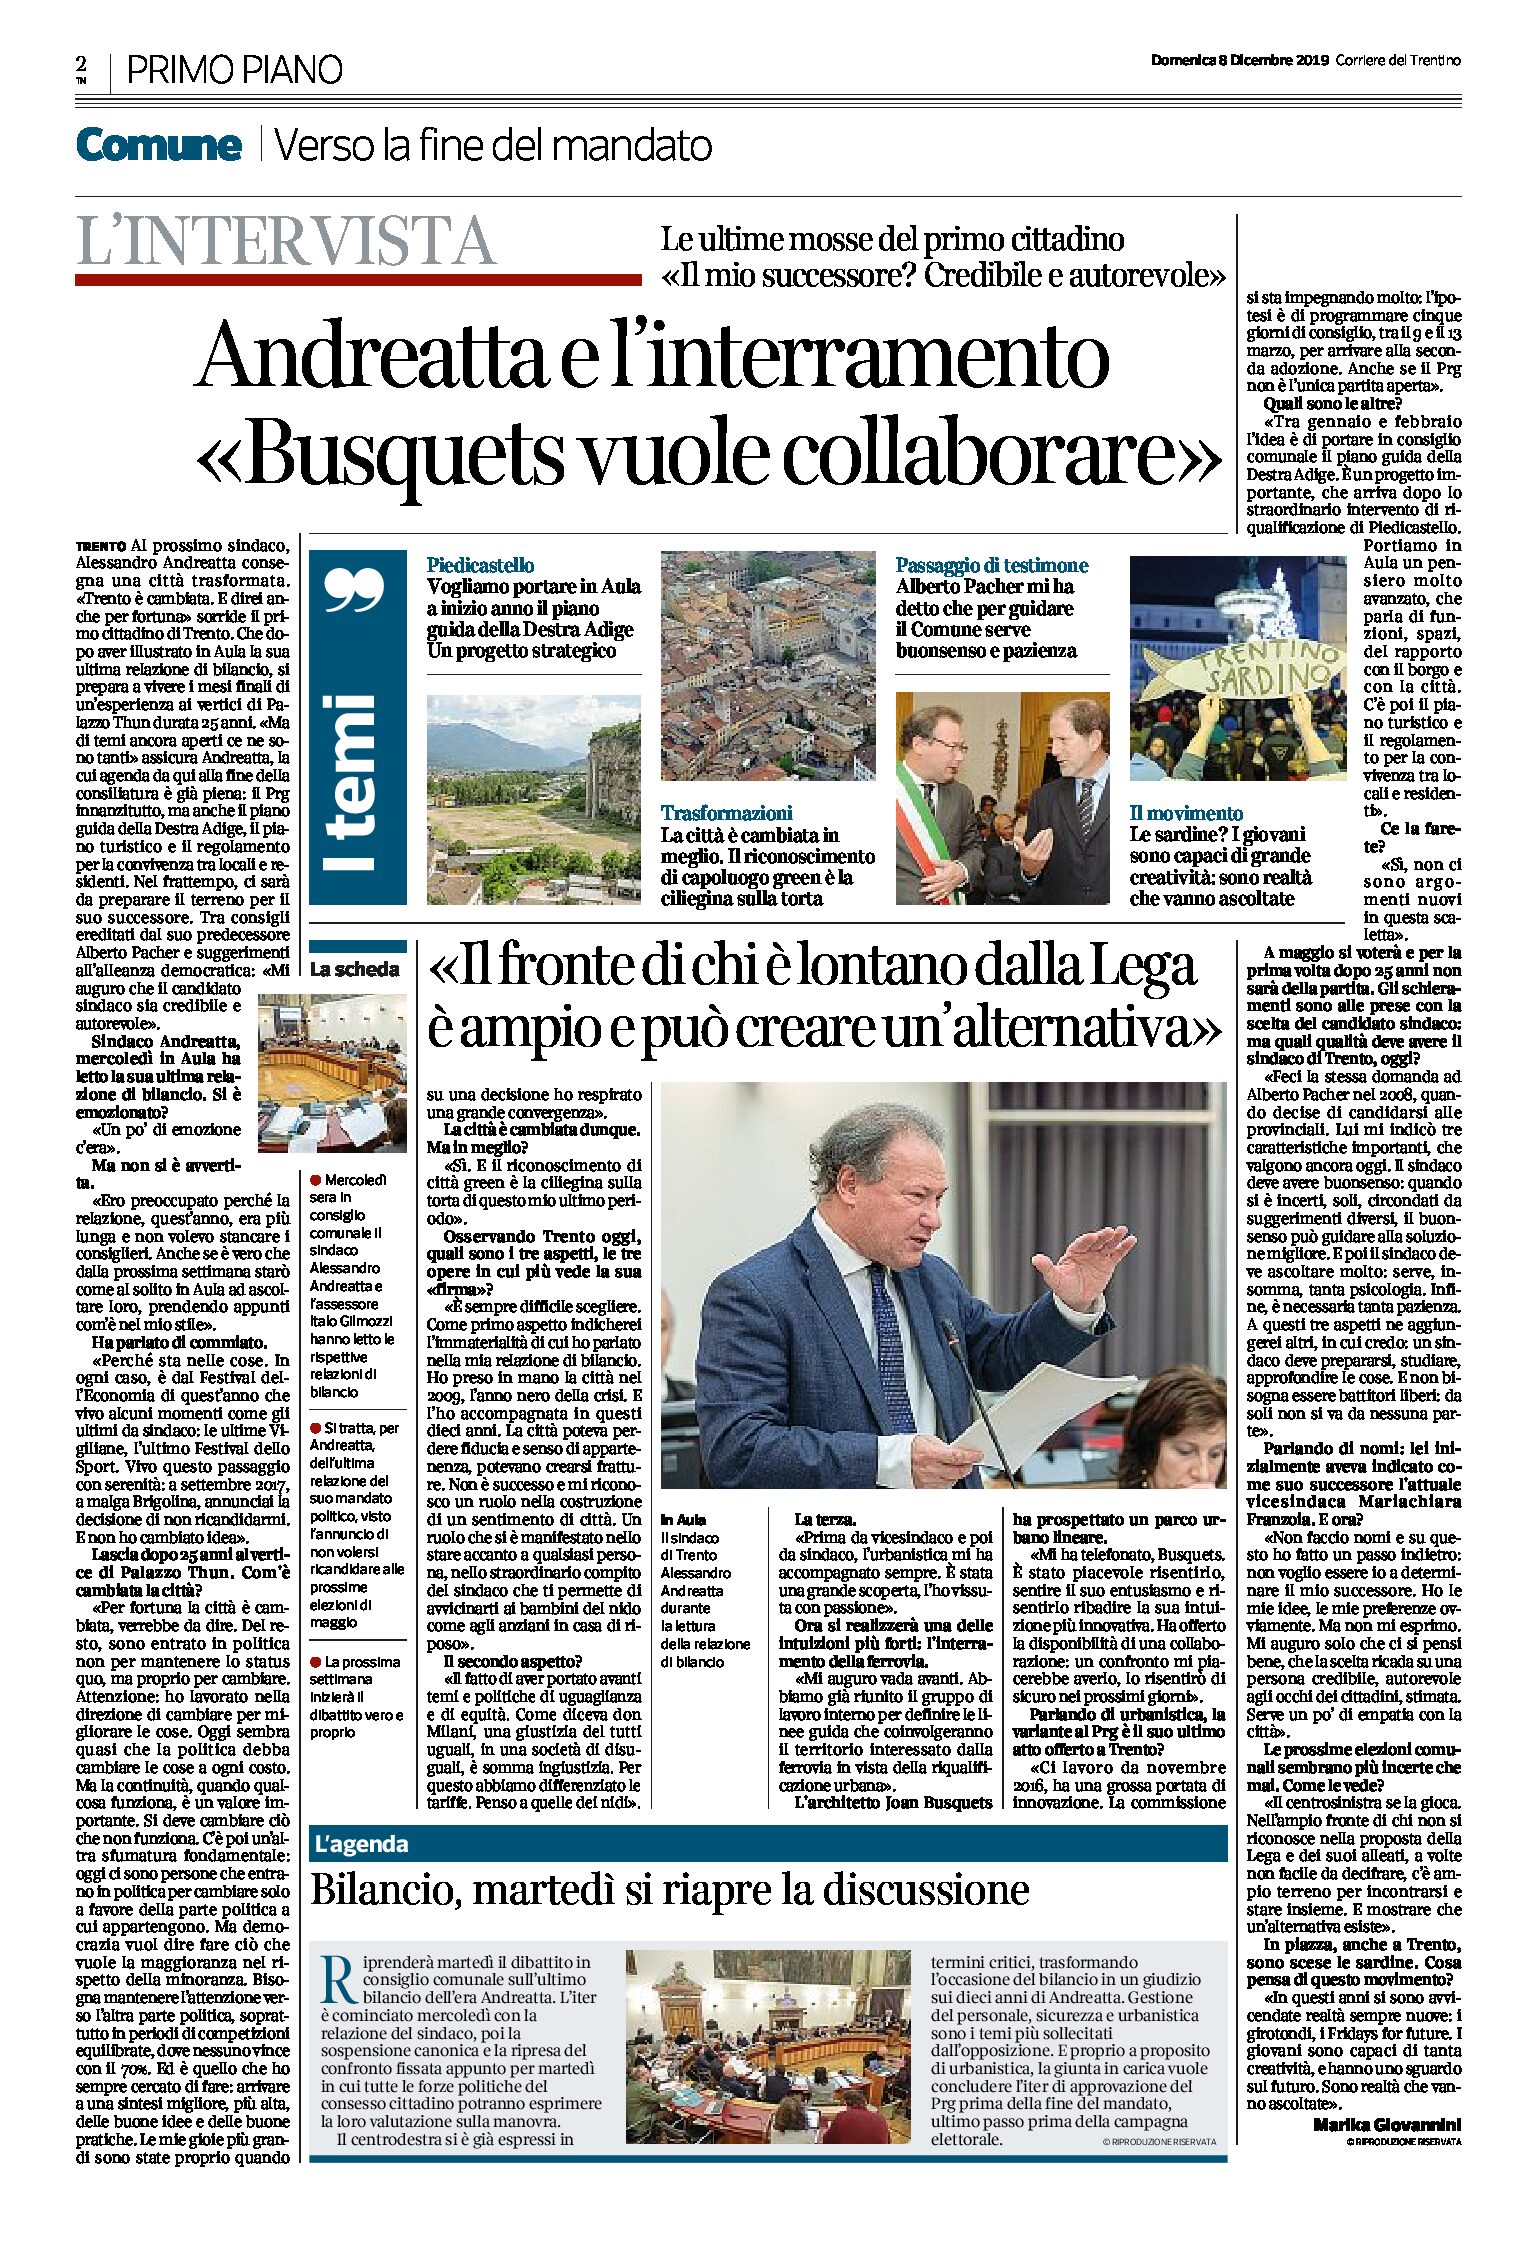 Trento: Andreatta e l’interramento della ferrovia “Busquets vuole collaborare”